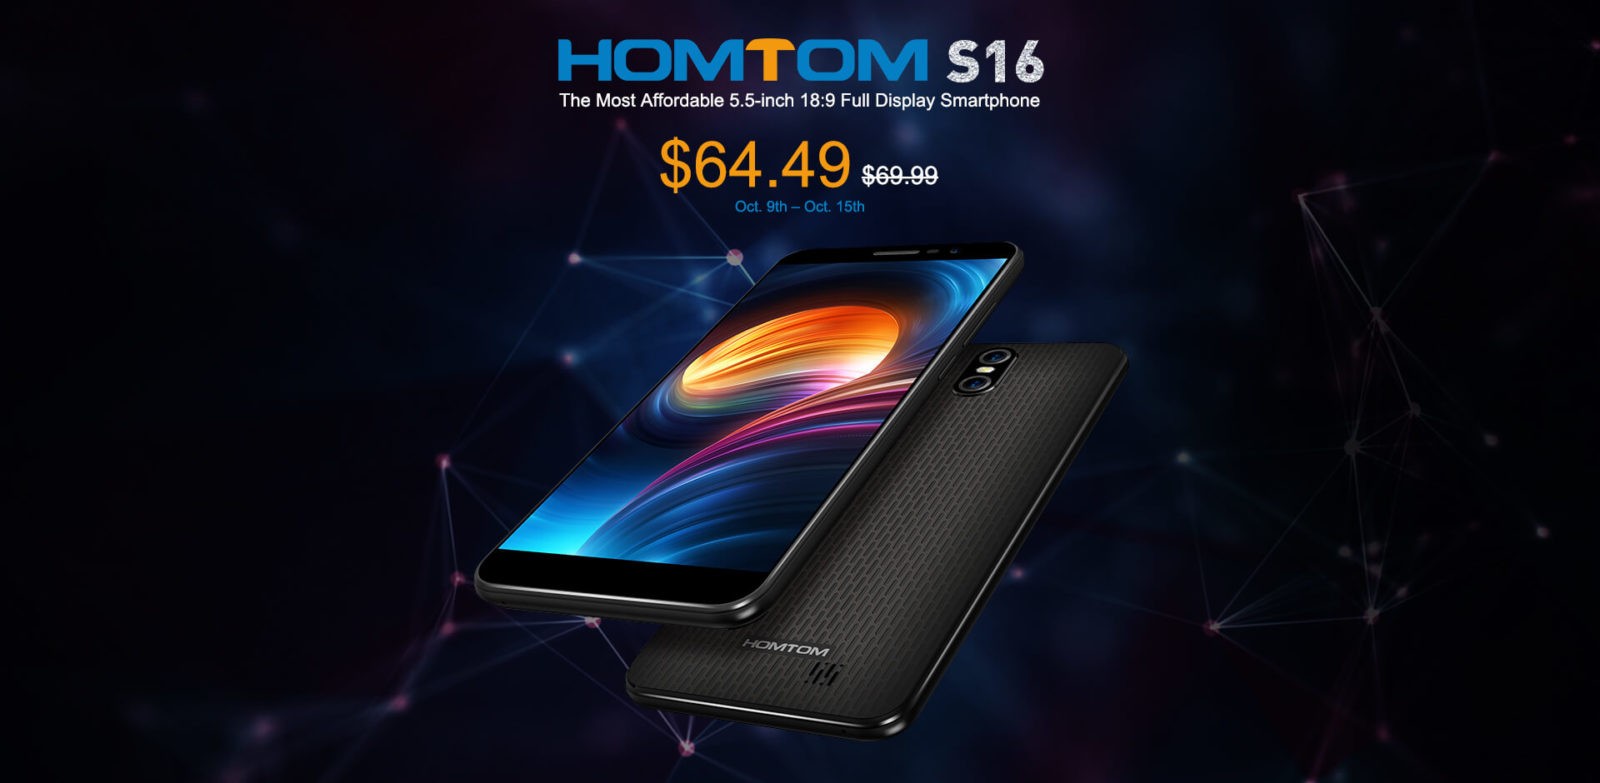 Выпущен новый HOMTOM S16 — смартфон с 5,5-дюймовый 18:9 дисплеем